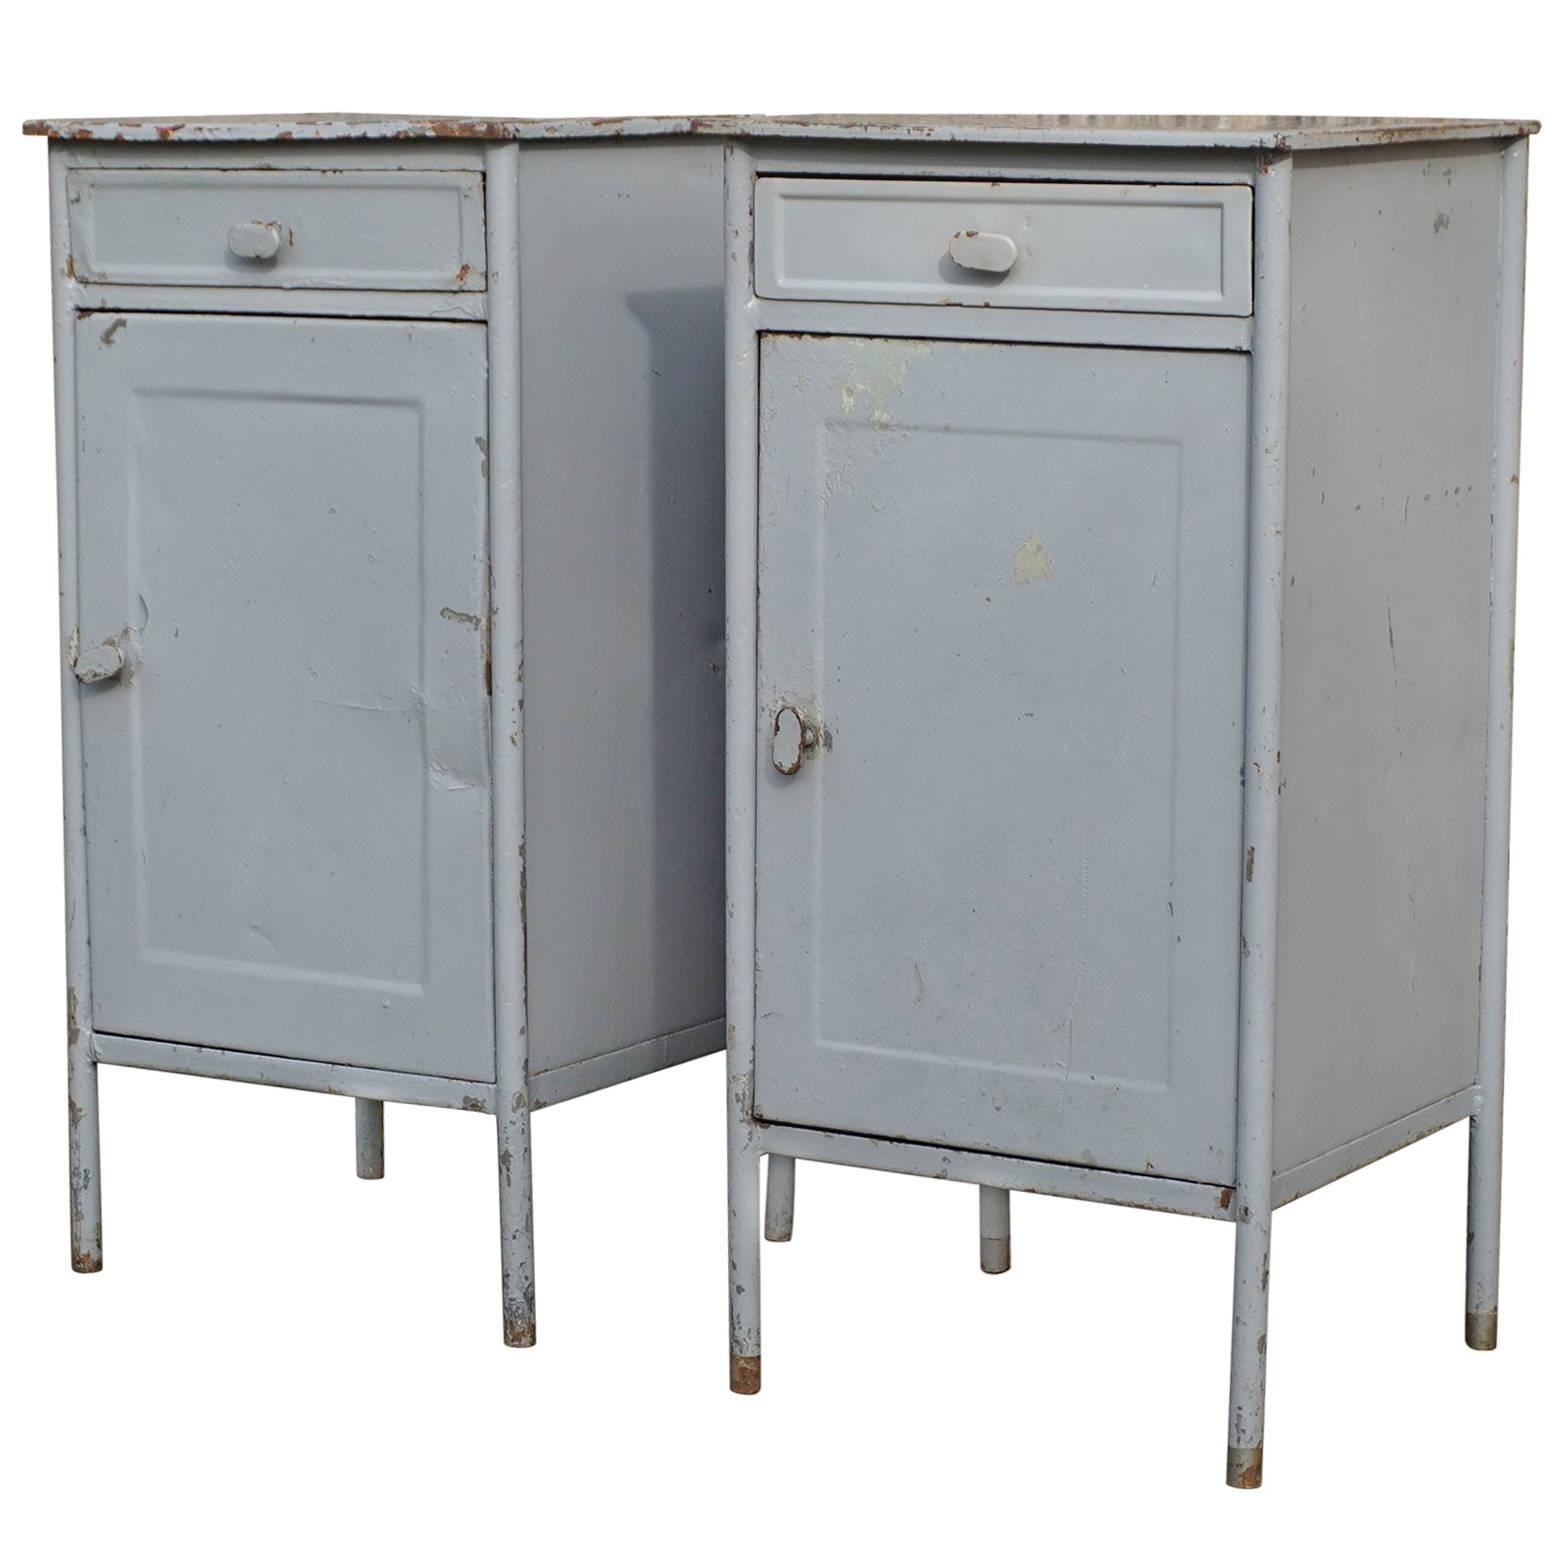 Post World War II 1940s Pair of Industrial Steel Nightstands Cabinets